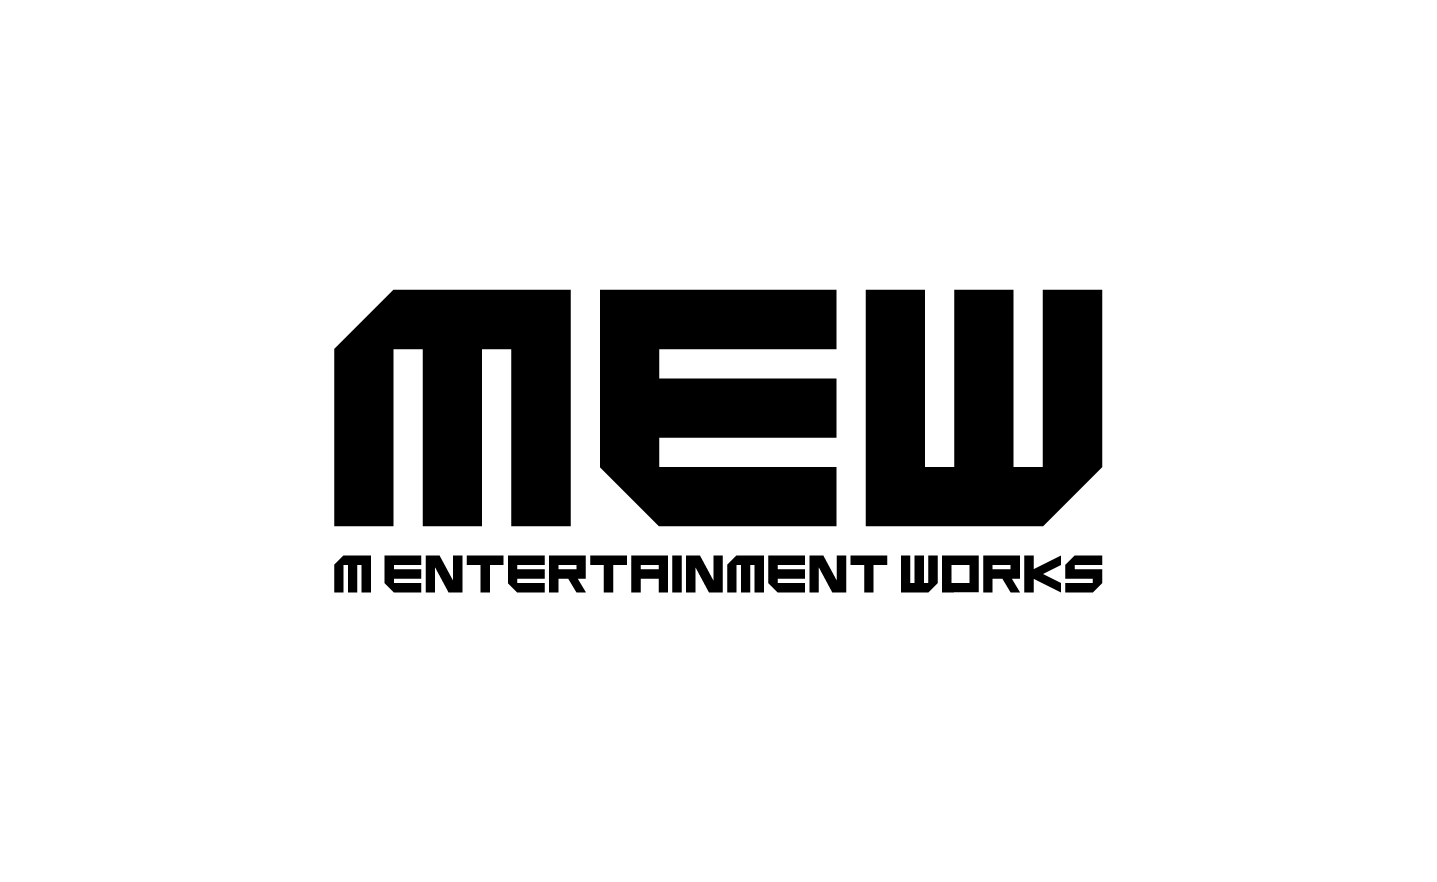 アバター・モーション・XR・NFTの最新技術を掛け合わせ、世界に新しいエンターテイメントを届けるテクノロジー集団「MEW」。新会社「M Entertainment Works株式会社」を設立。